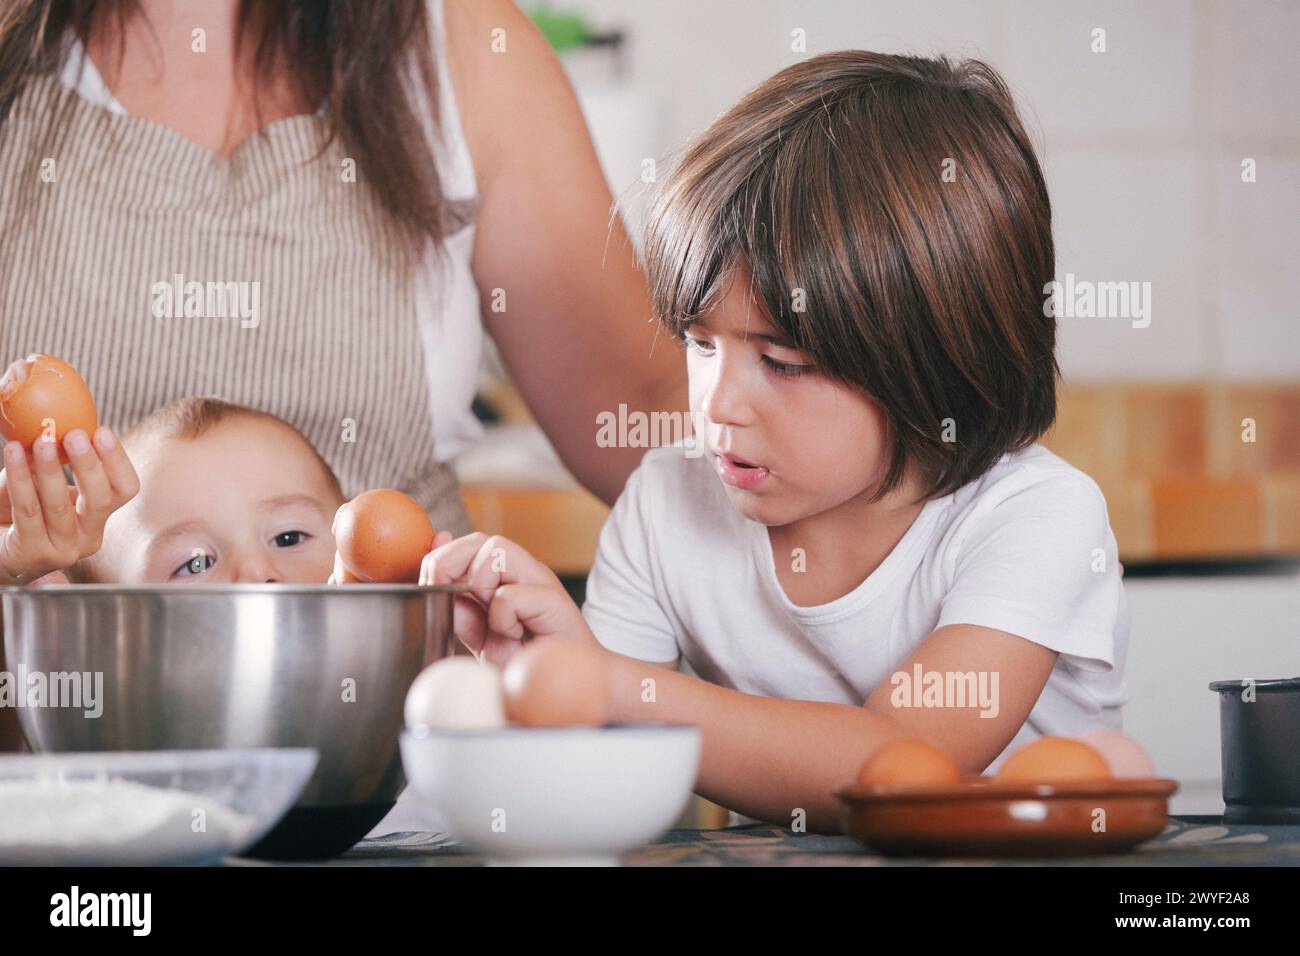 Kinder brechen Eier und legen sie in eine Schüssel während der Zubereitung eines Kuchens mit ihrer Mutter in der Küche zu Hause. Stockfoto